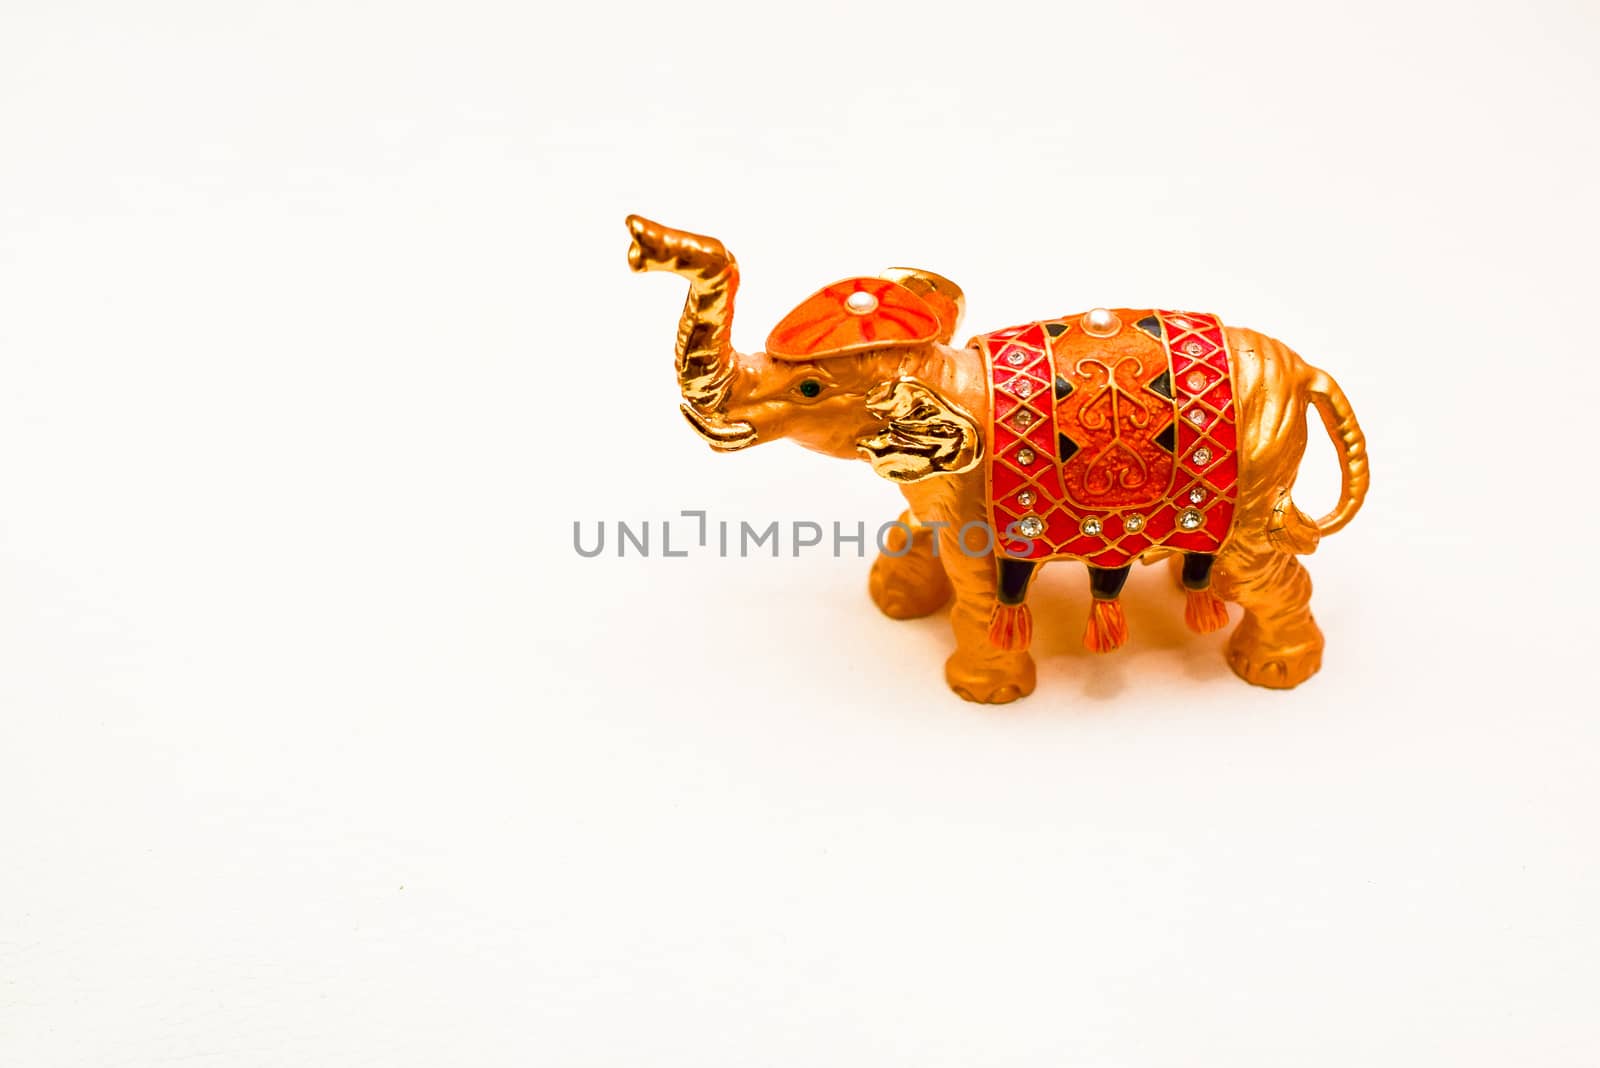 miniature figurine elephant made of semi-precious materials